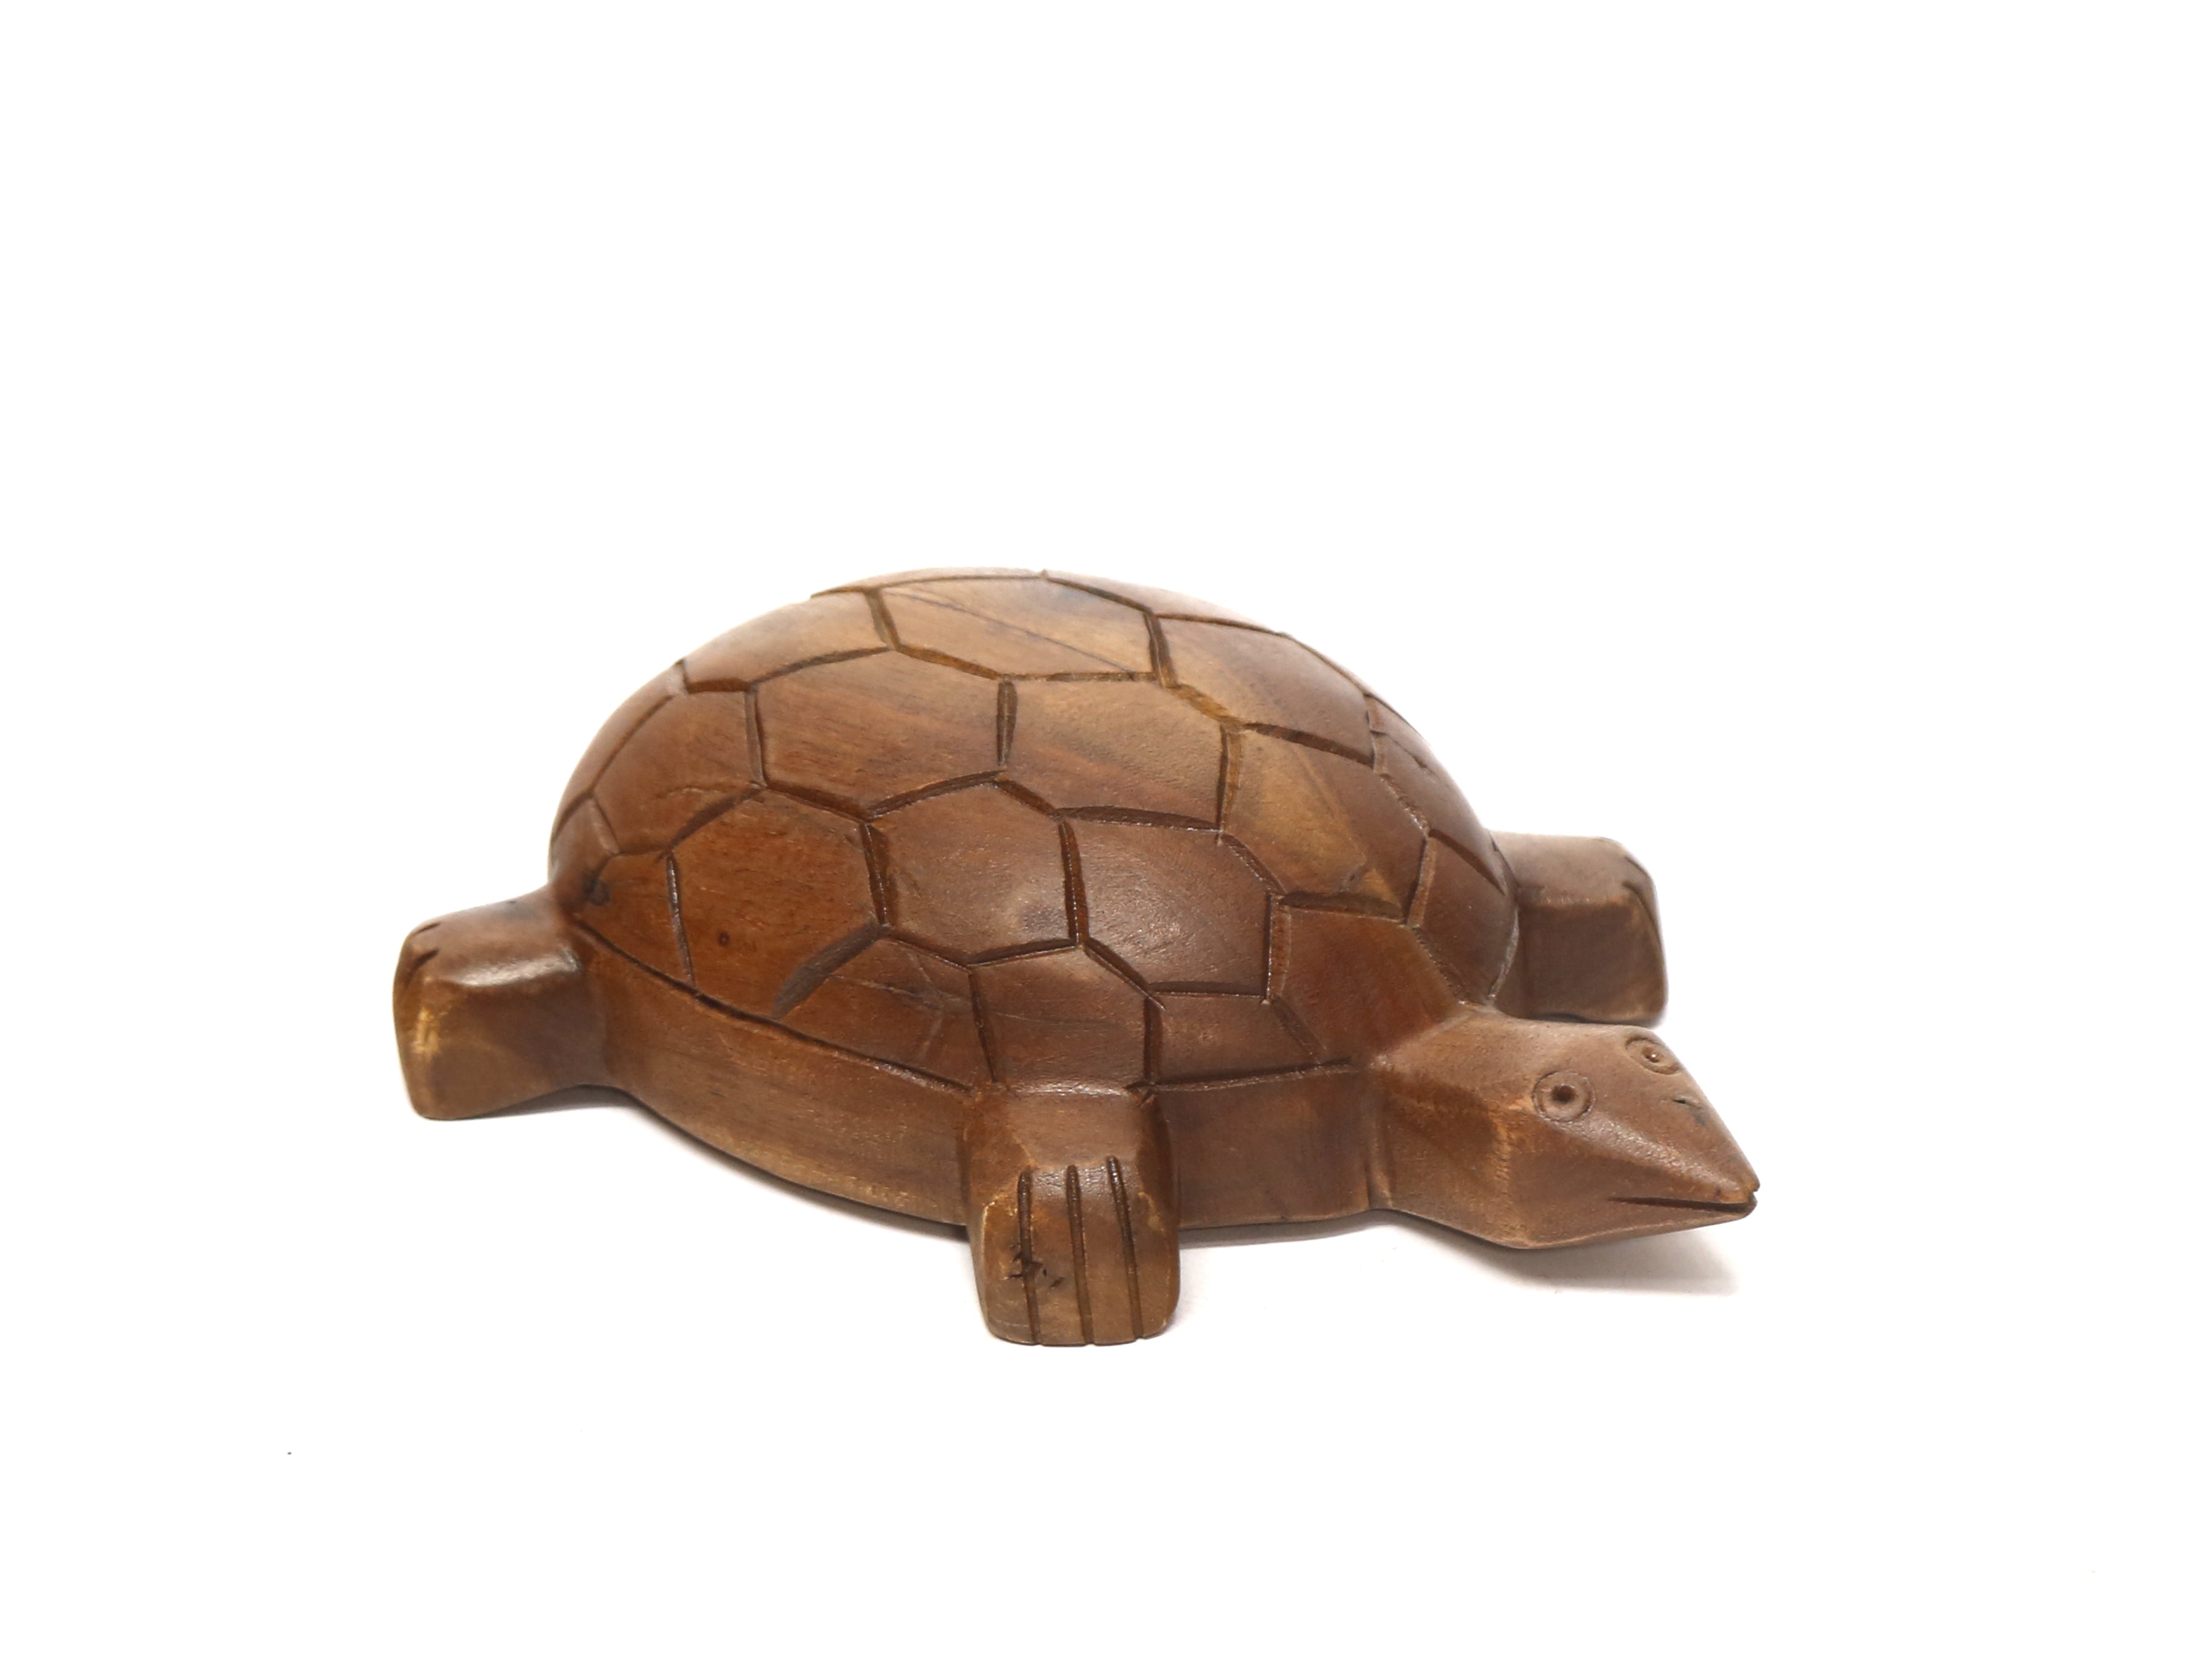 Wooden Detailed Turtle Showpiece Animal Figurine